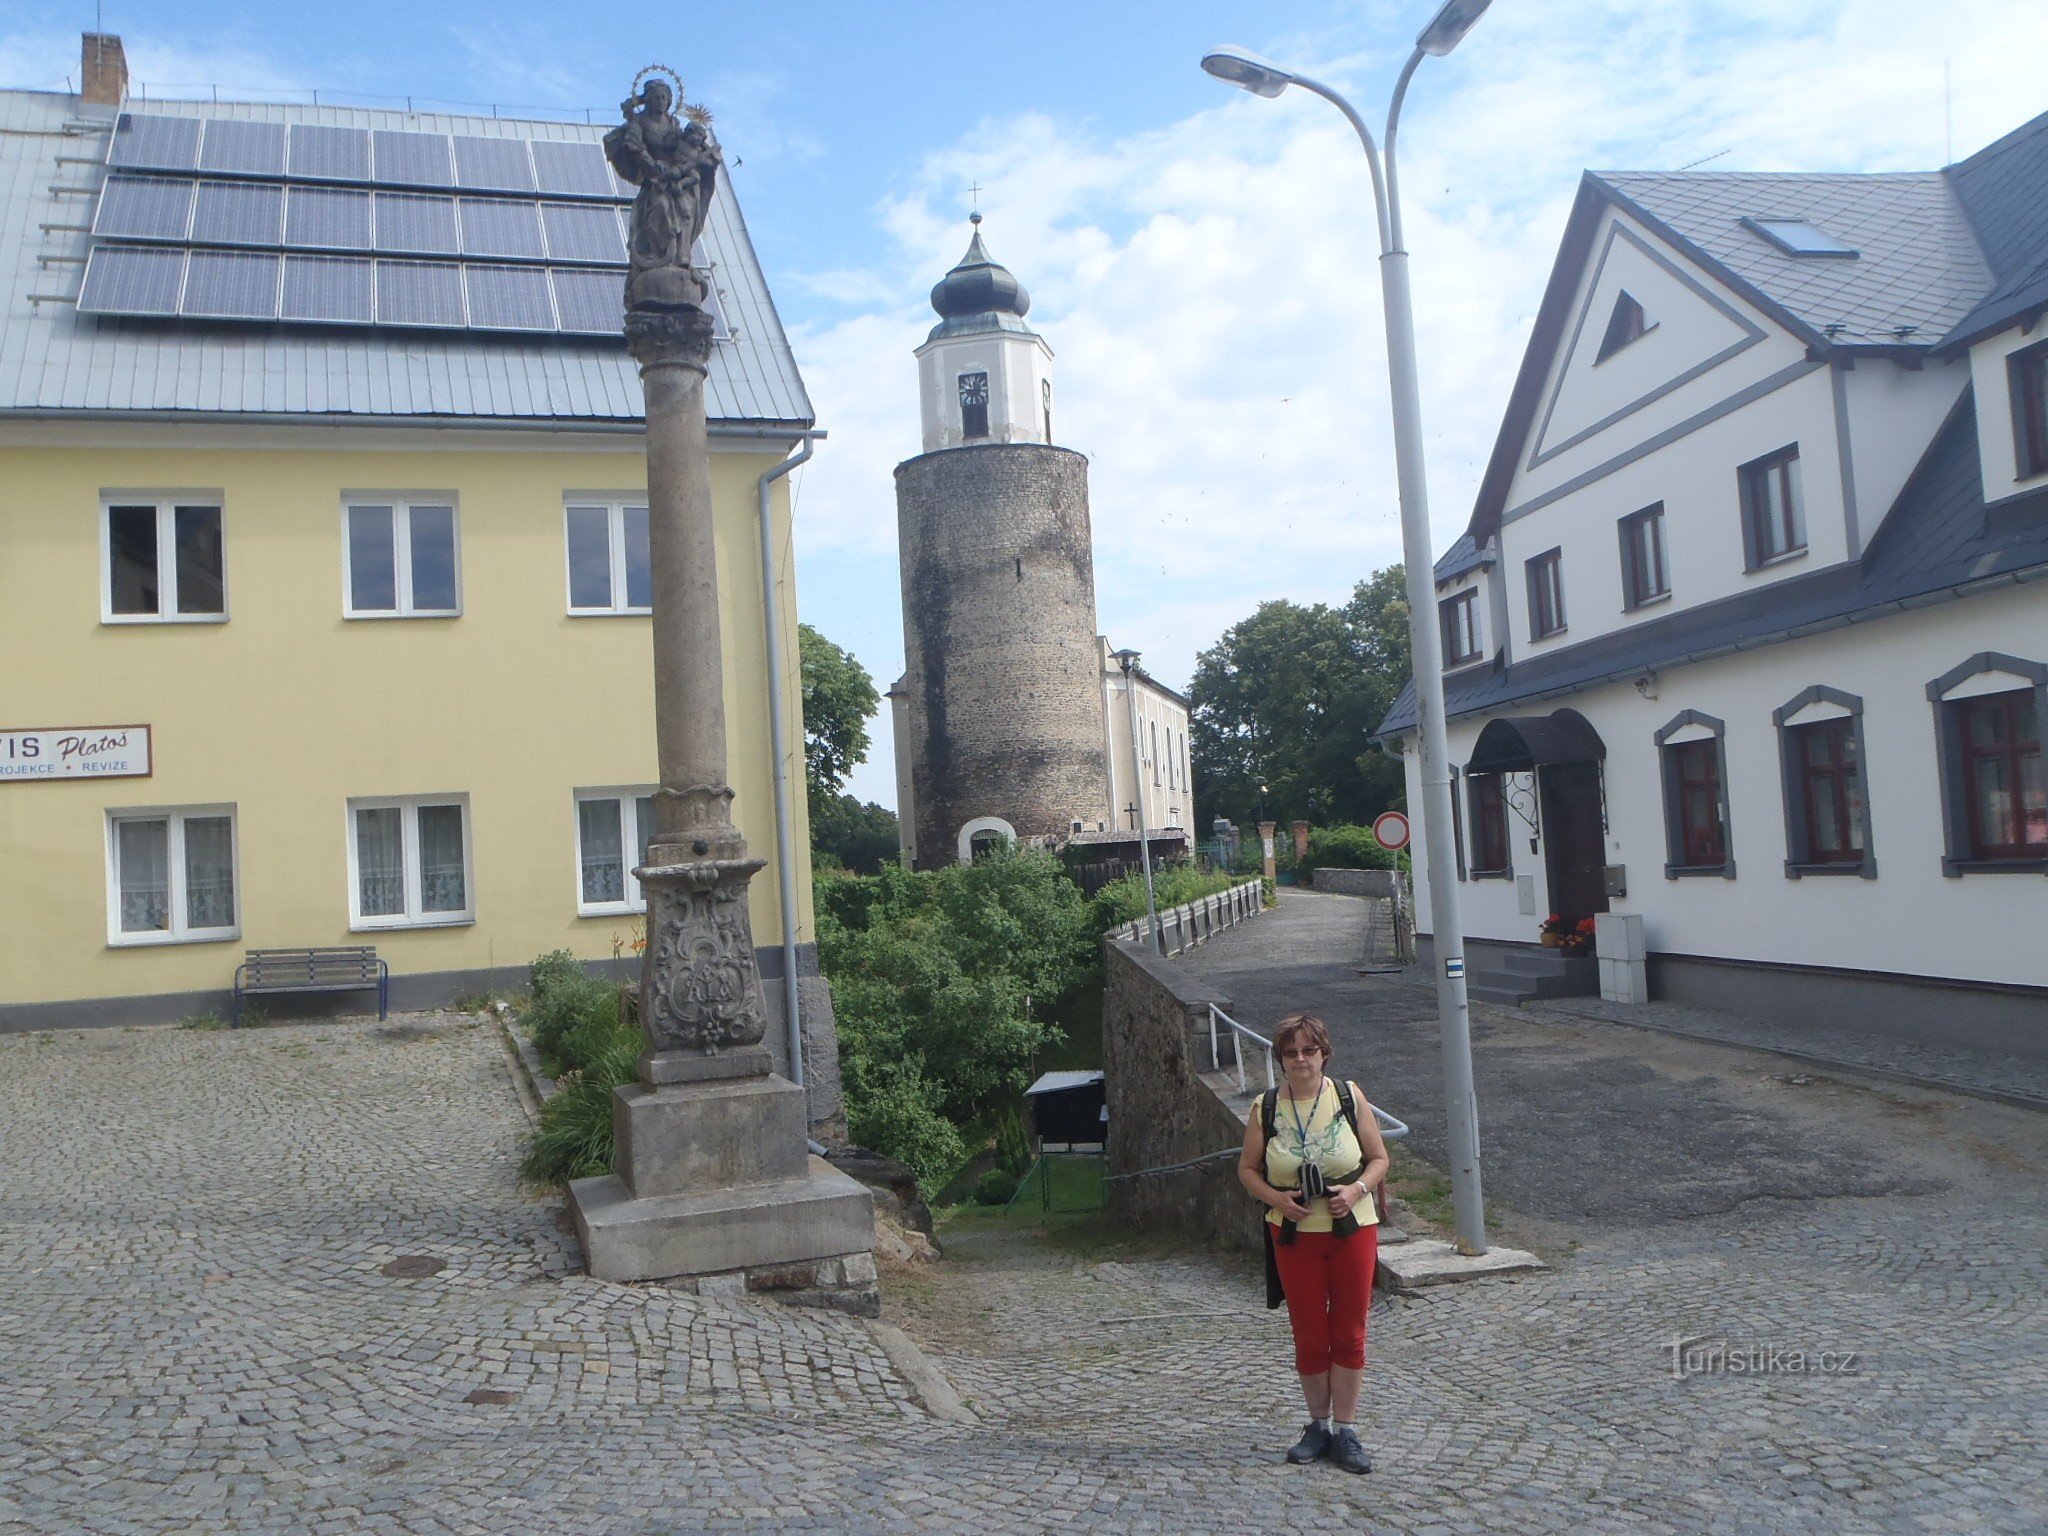 Στο Máměstí, πίσω από τον πύργο του κάστρου Frýdberk